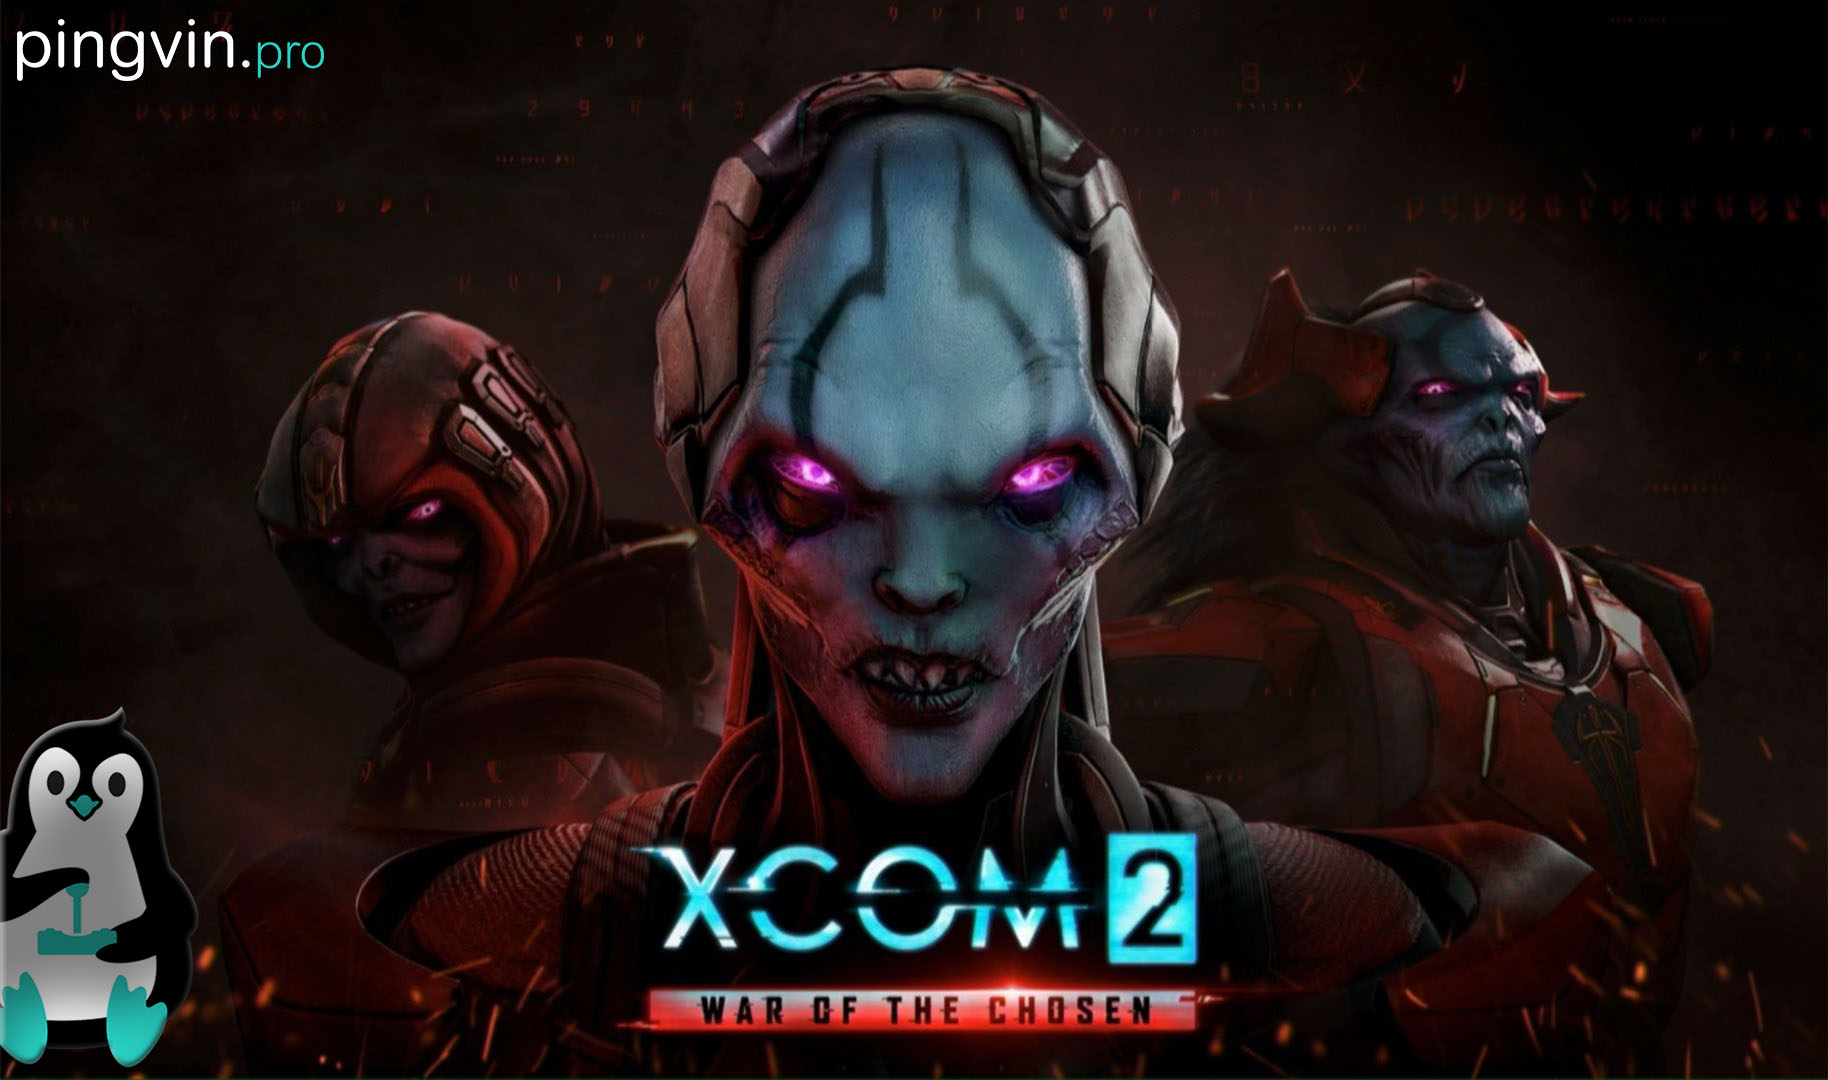  XCOM 2: War of the Chosen